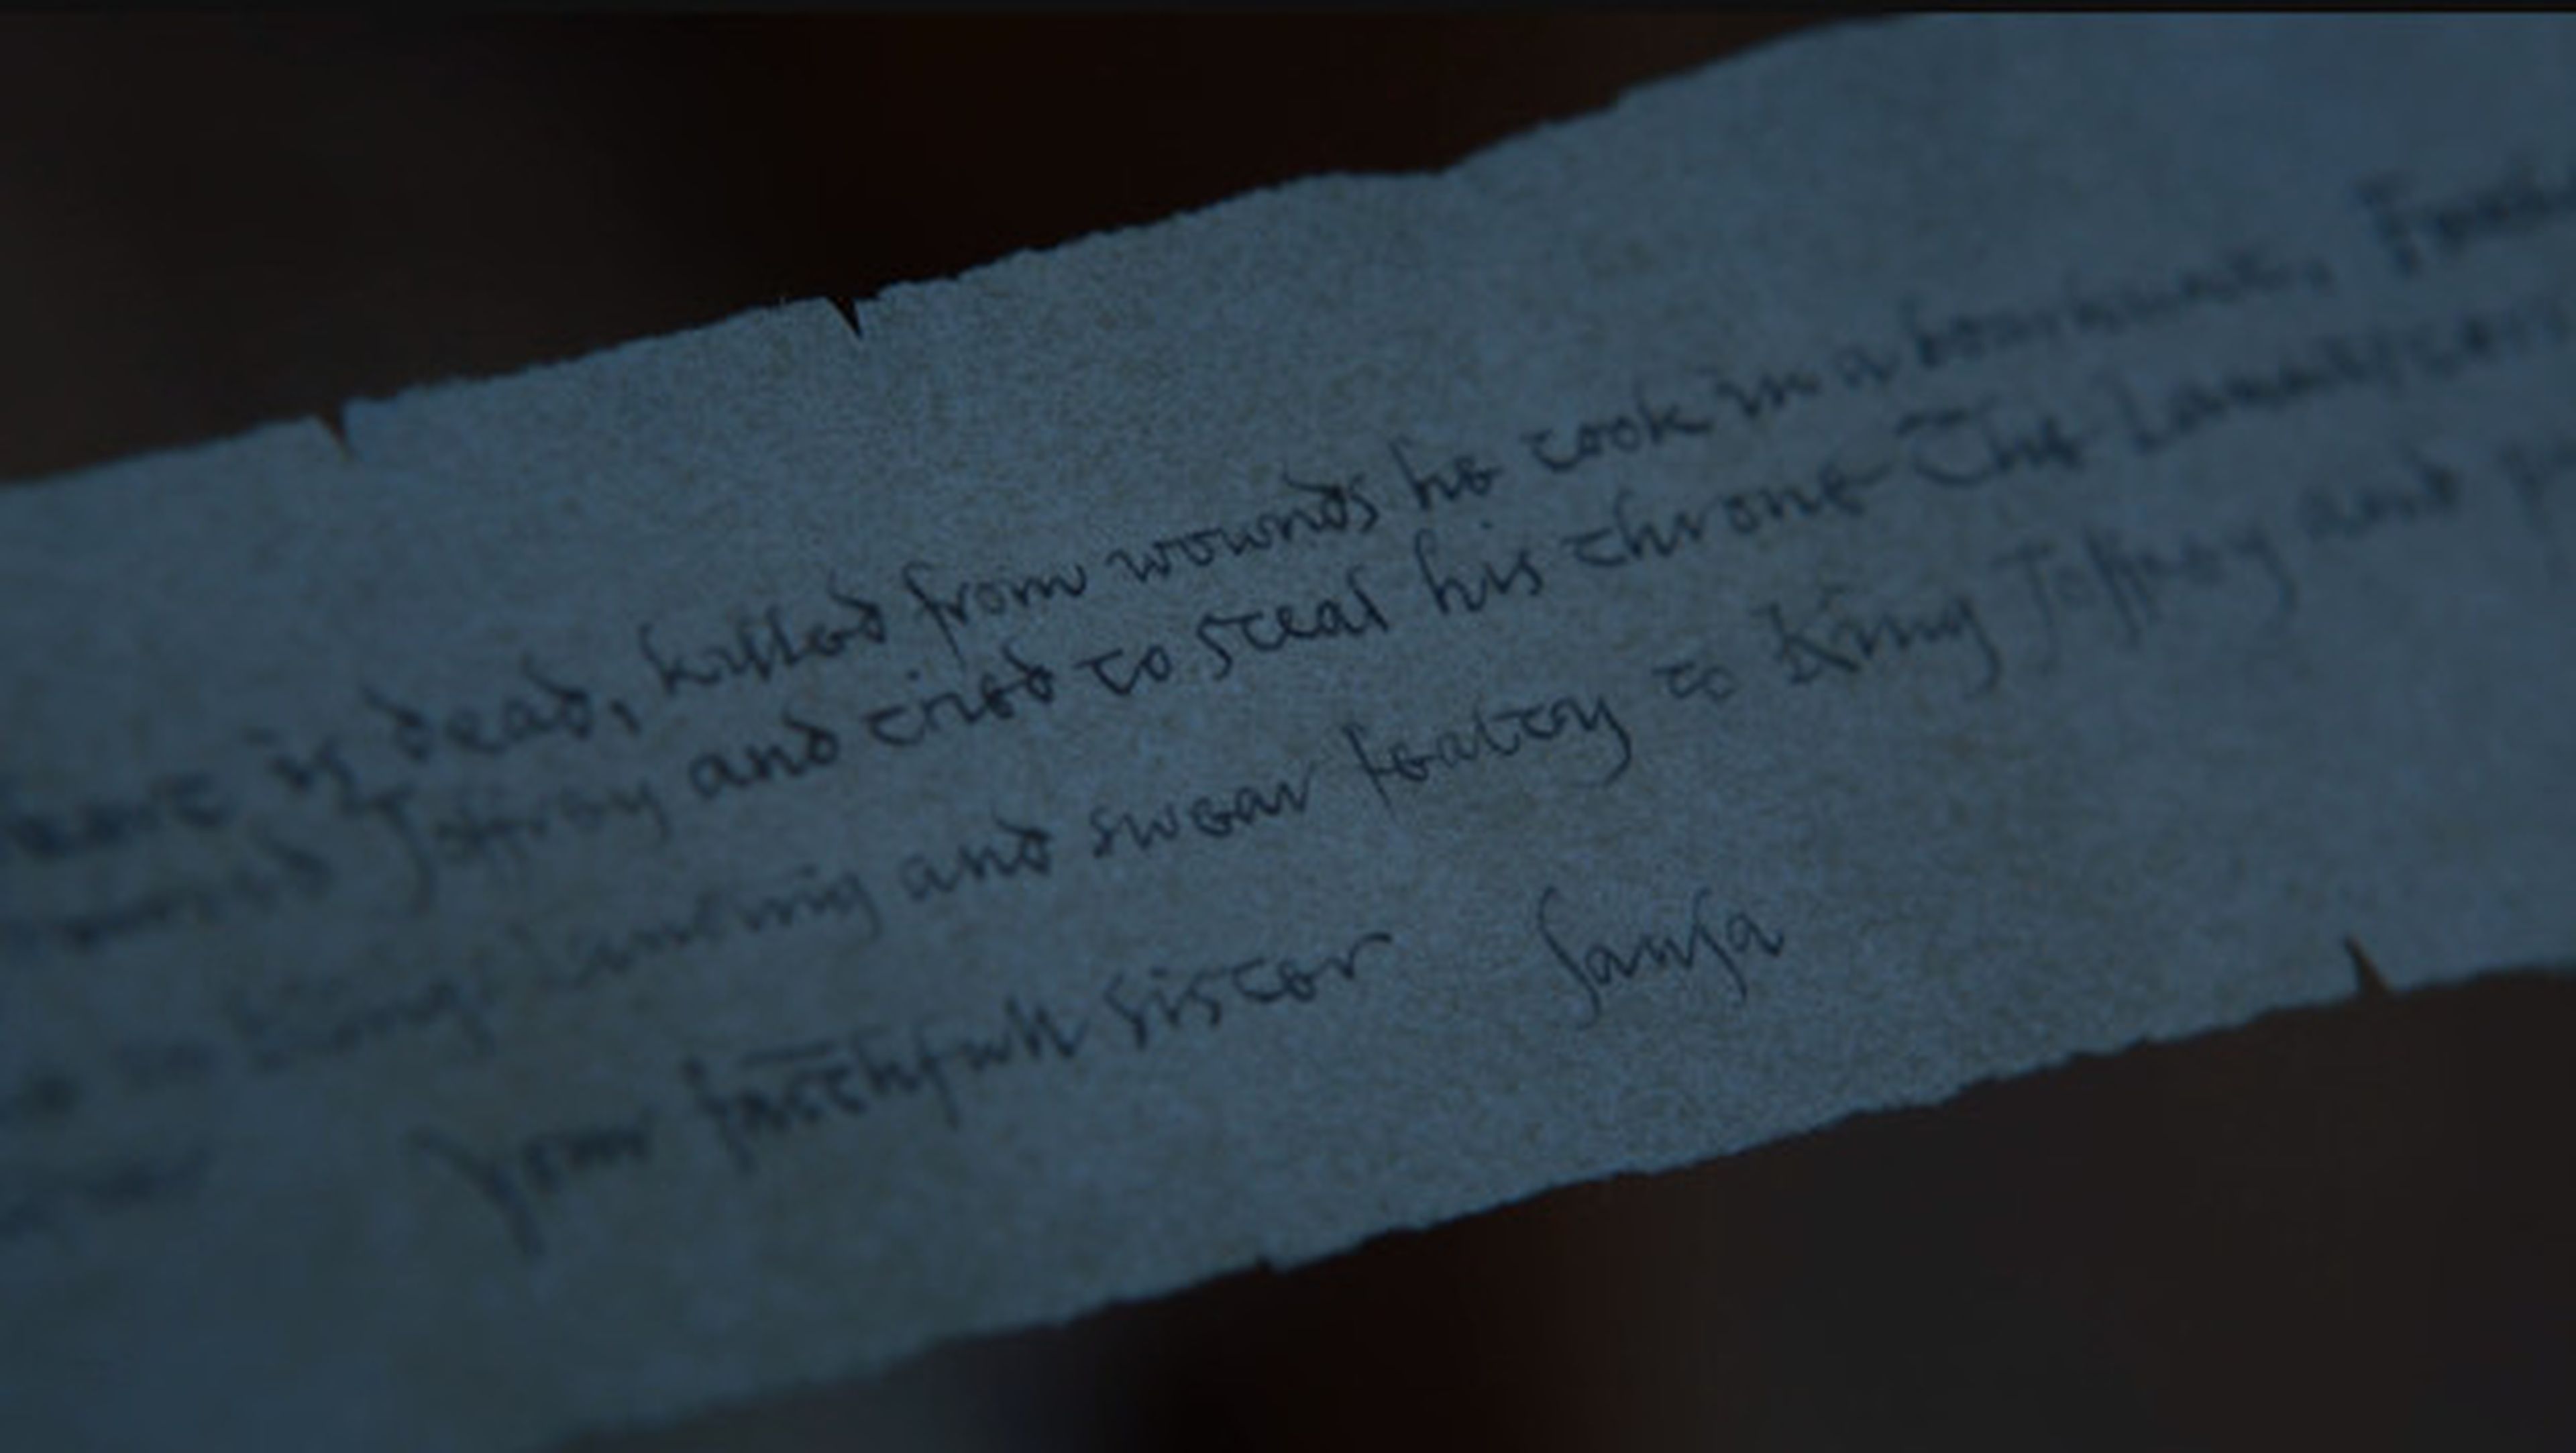 Esto es lo que dice la nota secreta que Arya encuentra en el 7x05 de Juego de Tronos.